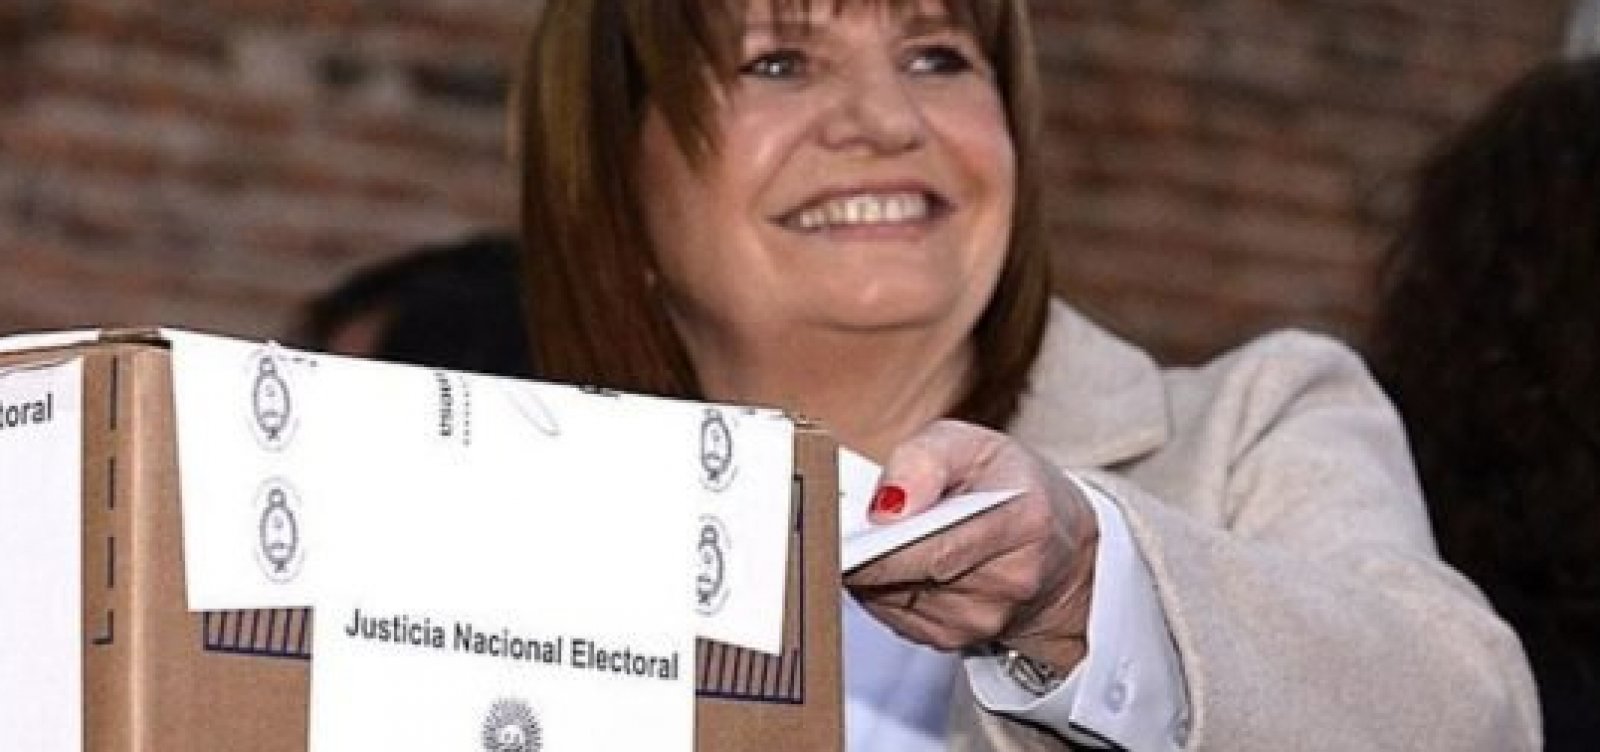 Eleições da Argentina: Patricia Bullrich declara apoio para Javier Milei no 2° turno 